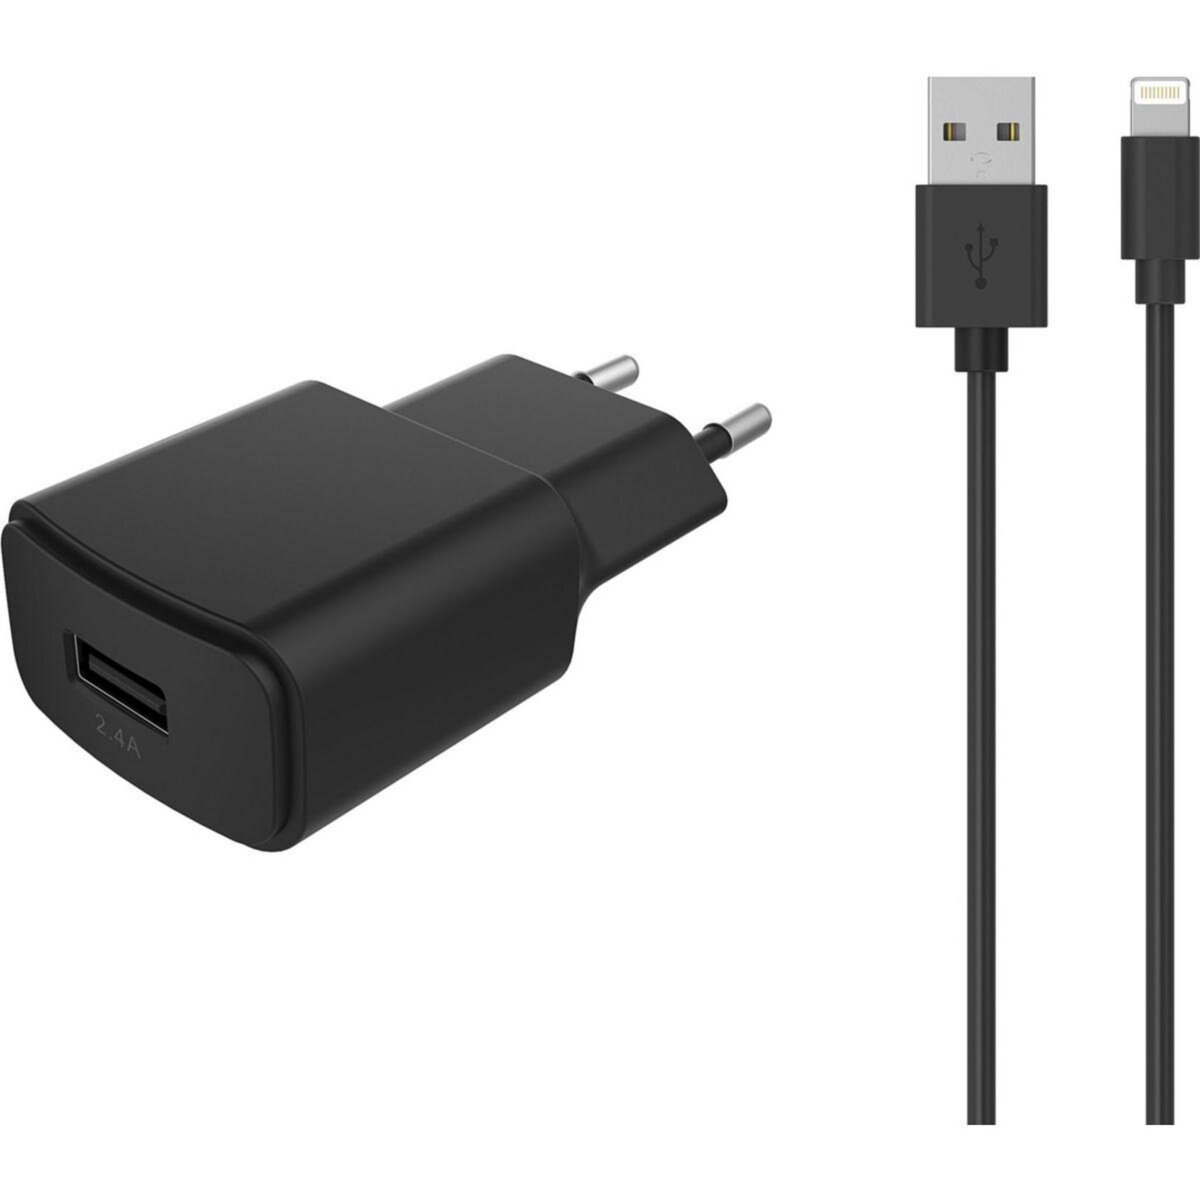 ESSENTIEL B Chargeur secteur USB 2.4A + Cable lightning noir